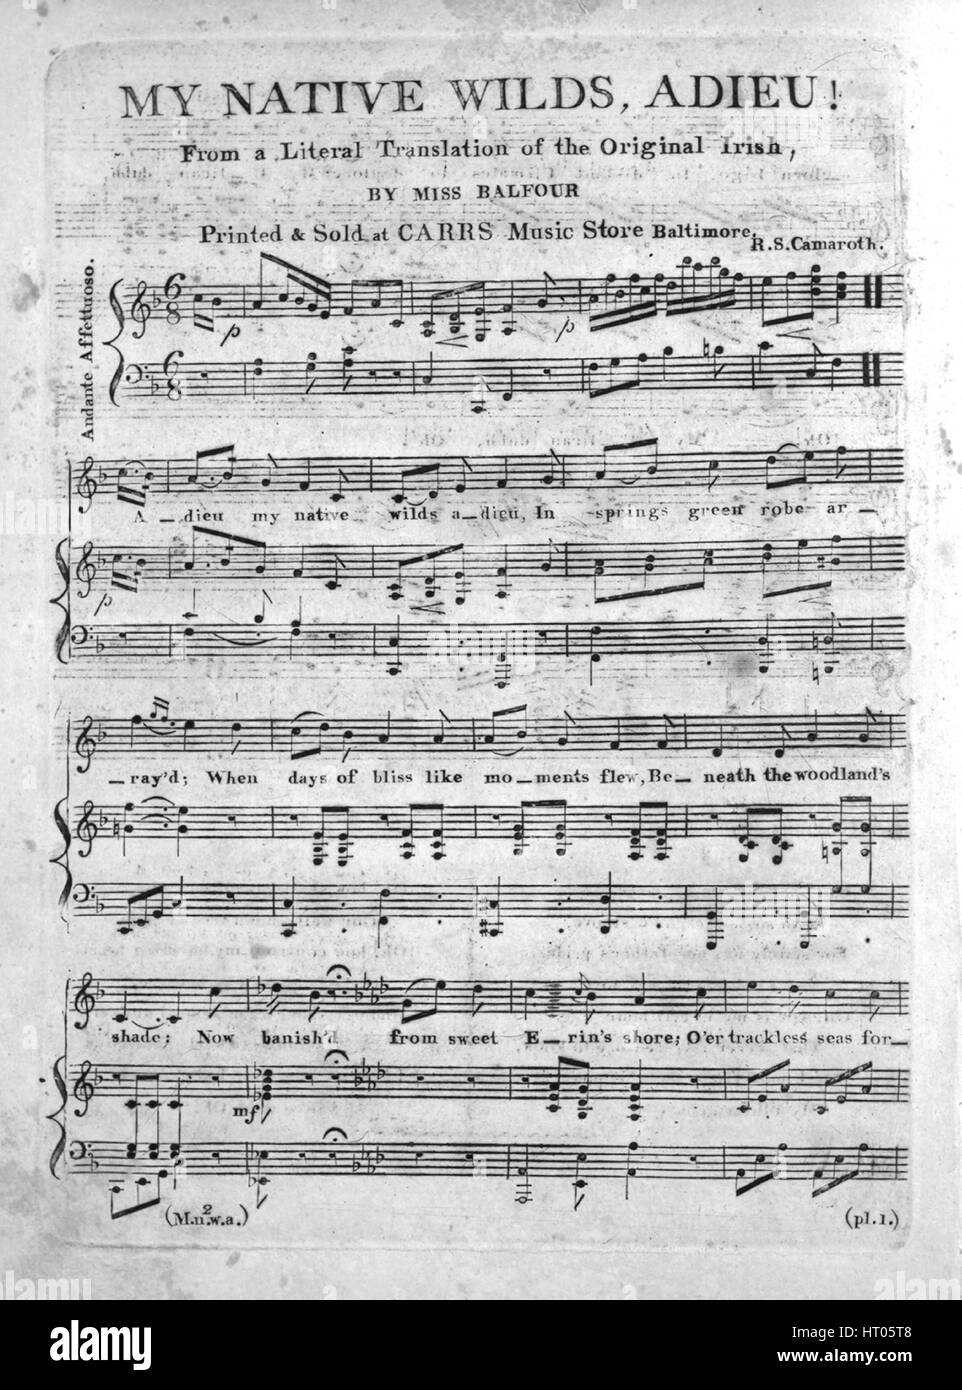 Sheet Music image de couverture de la chanson 'My Les Wilds, Adieu !", avec les notes de l'auteur original à lire 'à partir d'une traduction littérale de l'Original irlandais par Mlle Balfour', United States, 1900. L'éditeur est répertorié comme "Carr's Music Store", la forme de la composition est "avec chœur trophique', l'instrumentation est 'piano et voix", la première ligne se lit 'Adieu ma wilds adieu, dans la baie de printemps robe verte', et l'artiste l'illustration est répertorié comme 'Aucun'. Banque D'Images